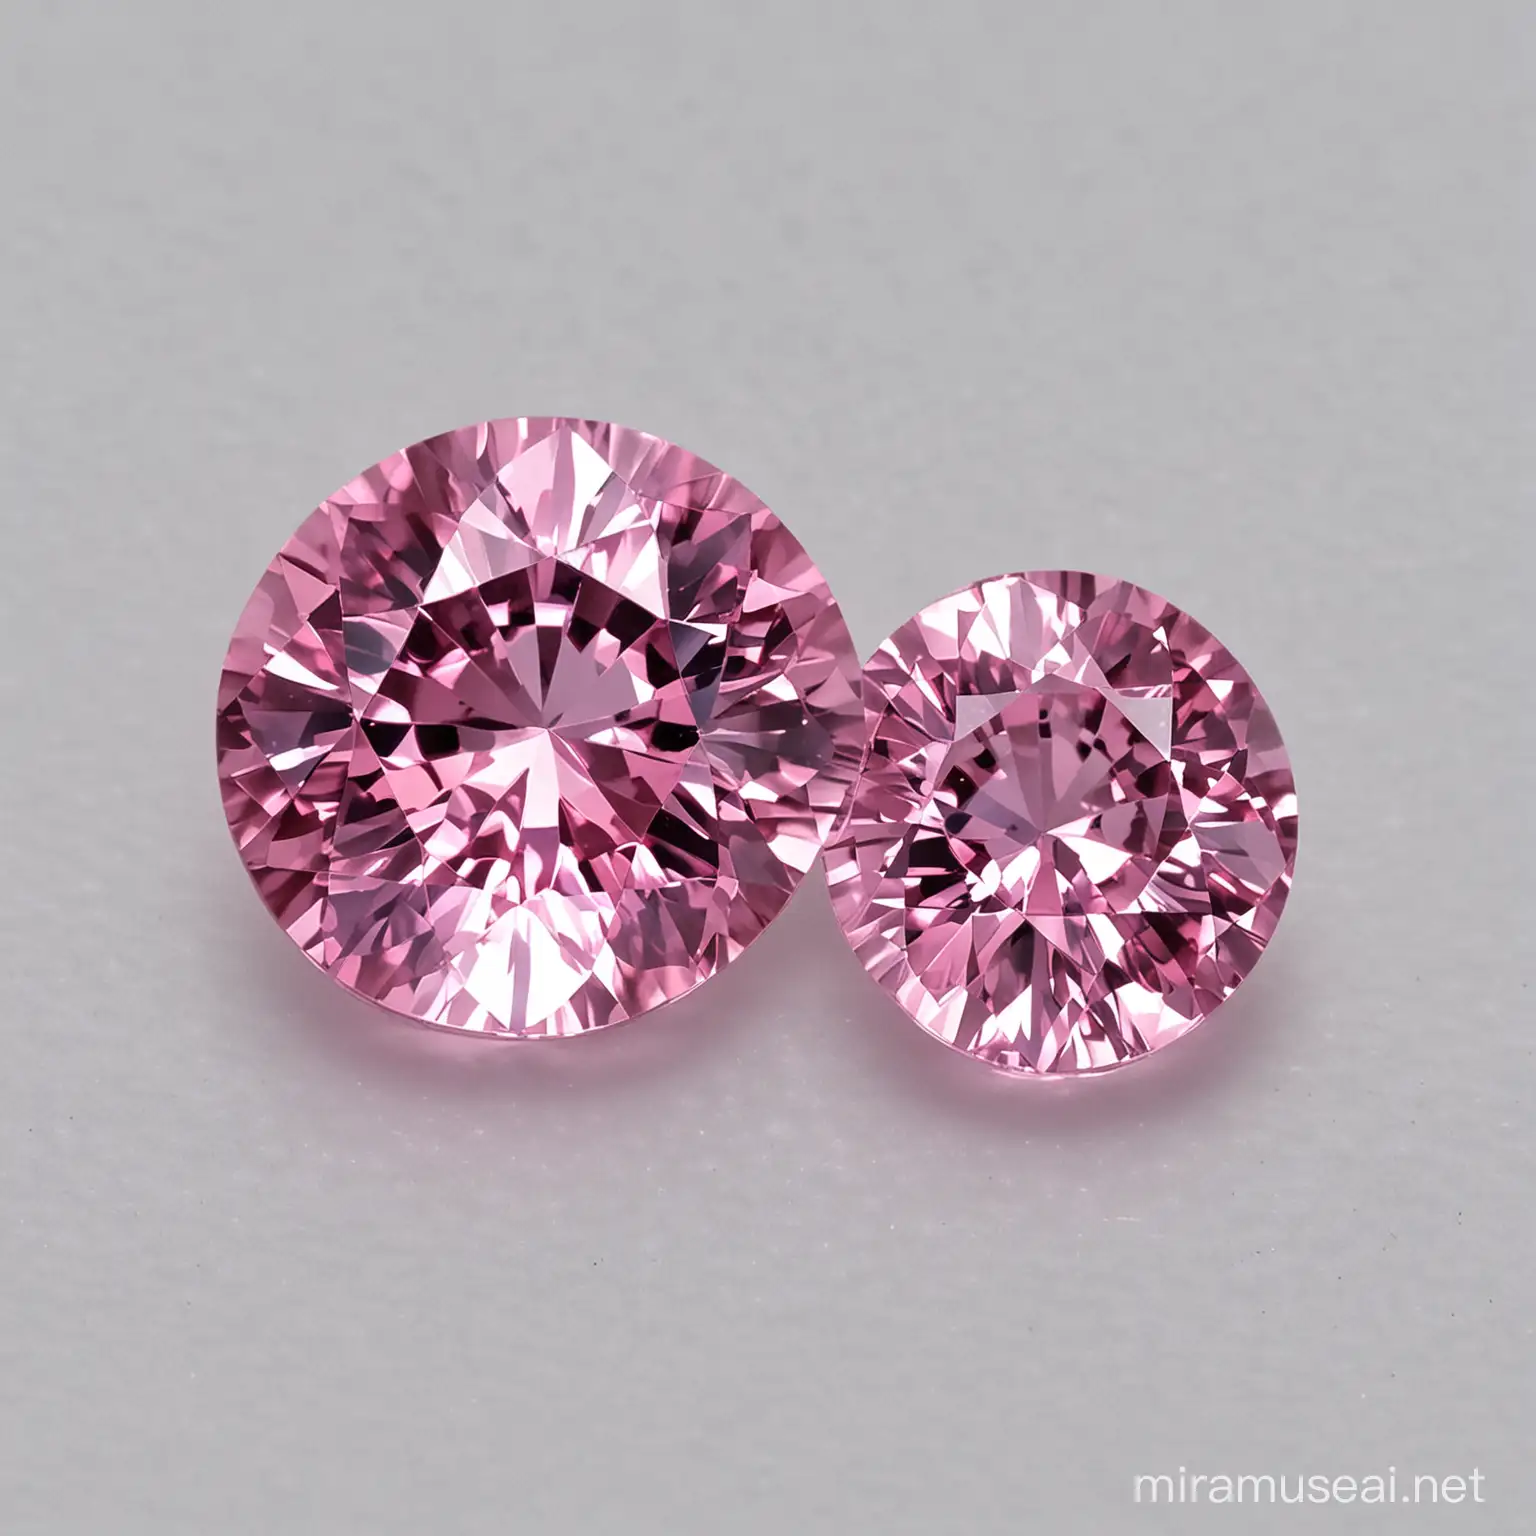 Vibrant Pink Sapphire Gemstone on Dark Background